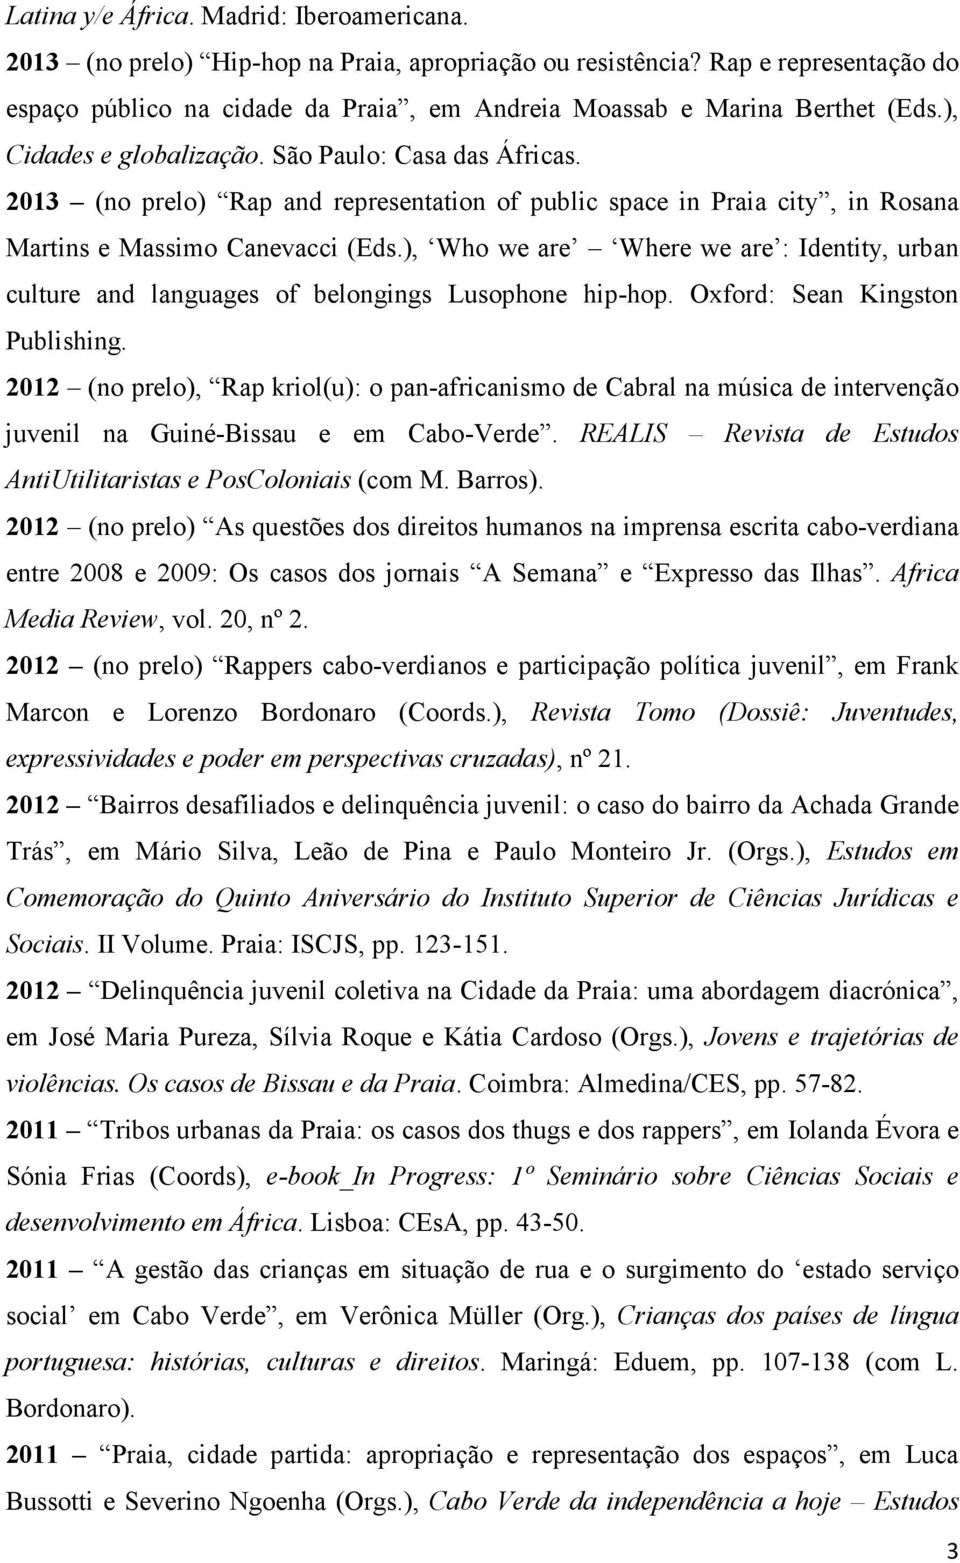 2013 (no prelo) Rap and representation of public space in Praia city, in Rosana Martins e Massimo Canevacci (Eds.